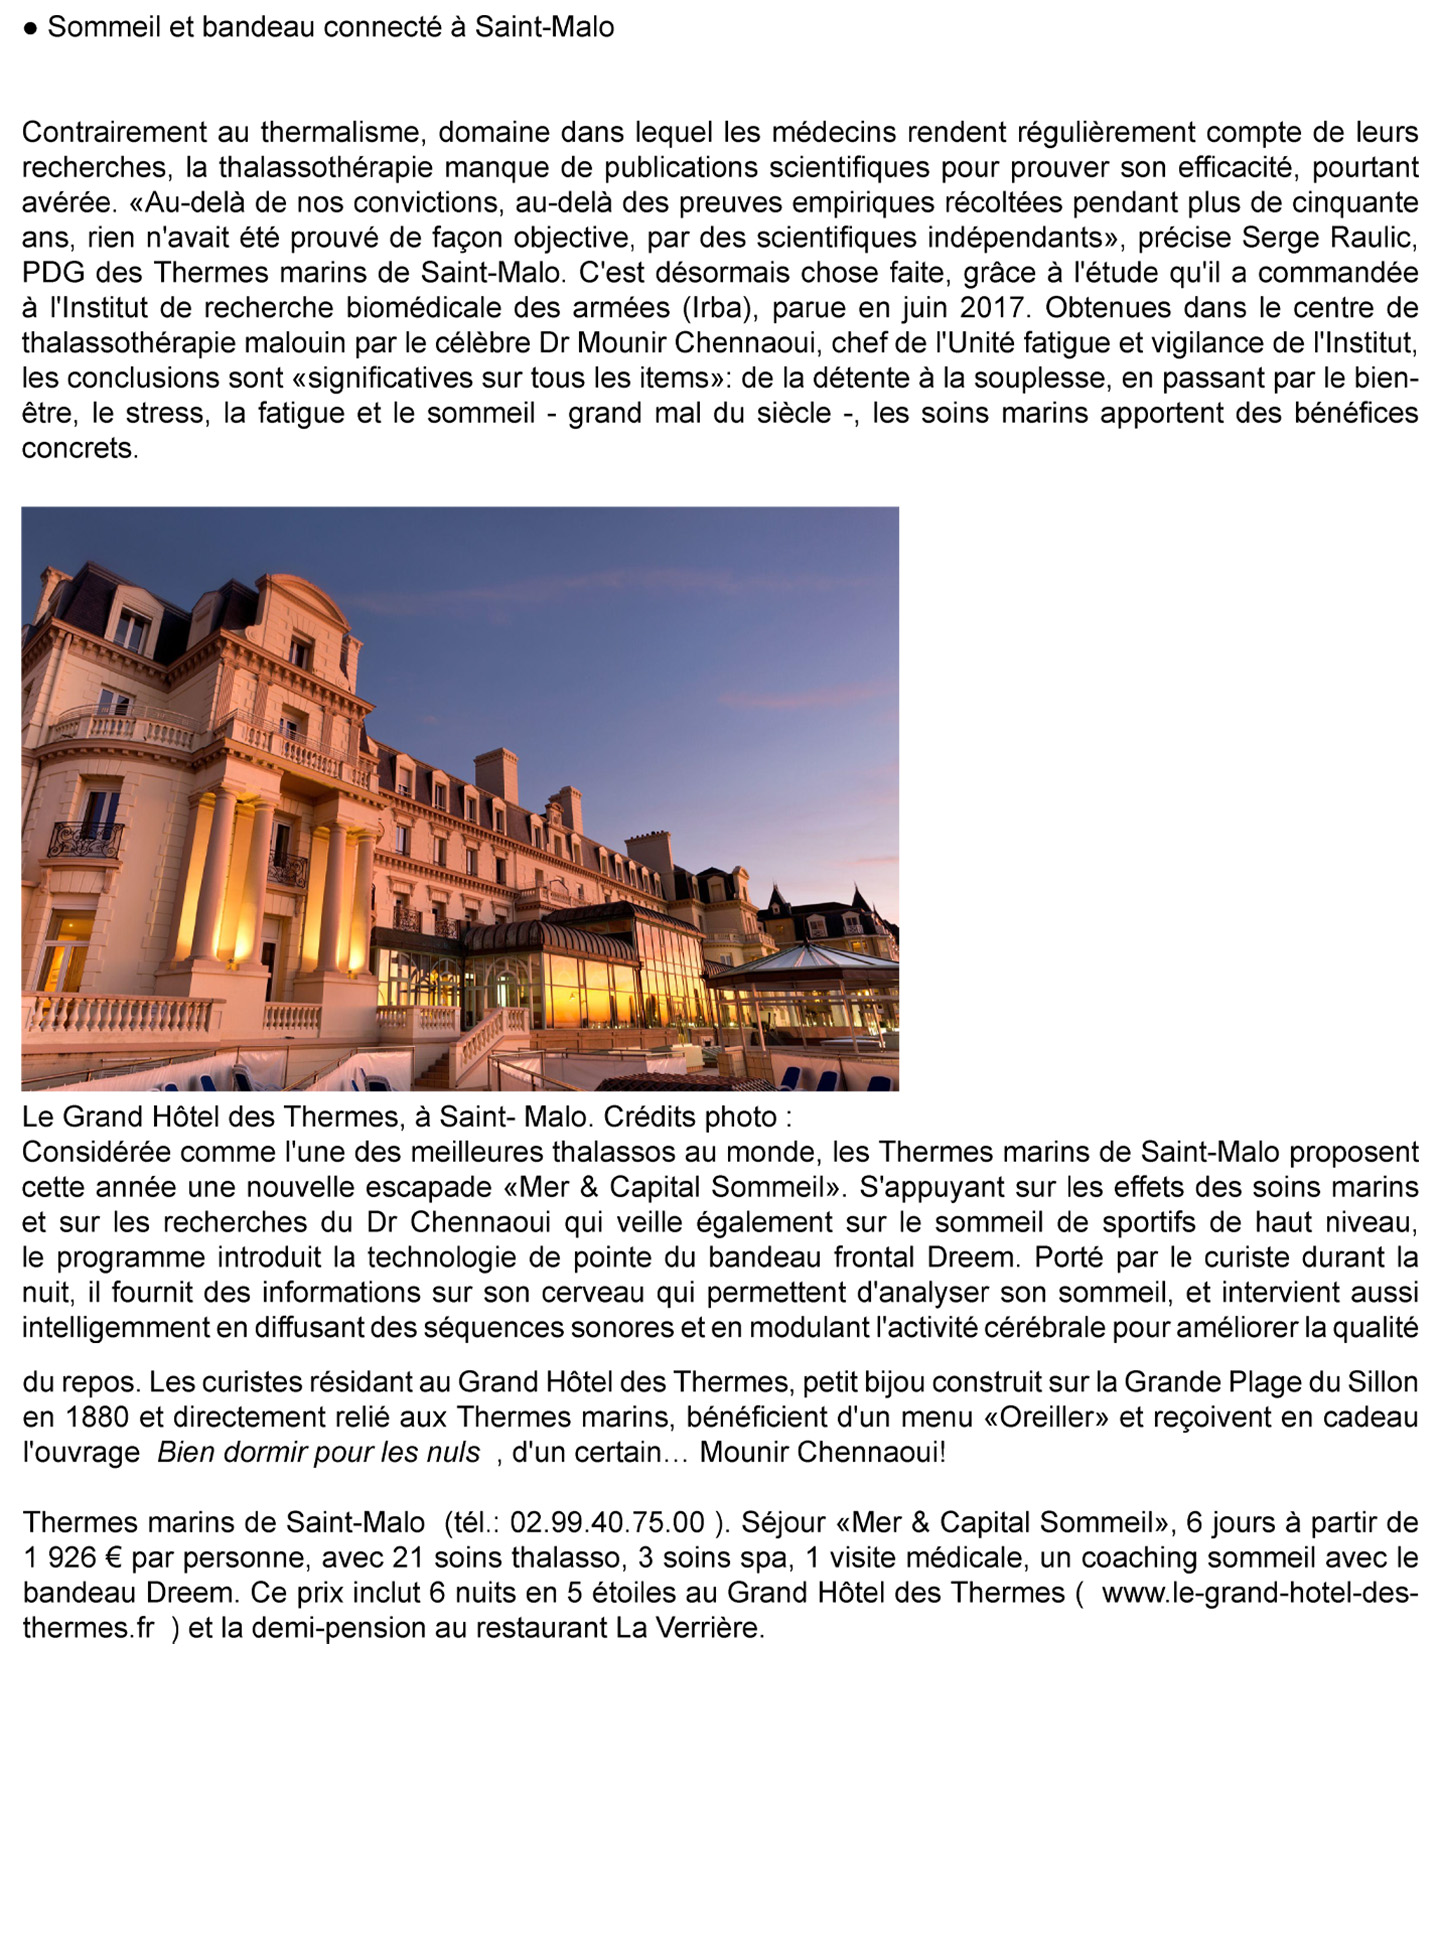 Article sur les cures marines de Trouville réalisées par le studio jean-Philippe Nuel dans le magazine Le Figaro, nouvel hotel spa thalasso de luxe, architecture d'intérieur de luxe